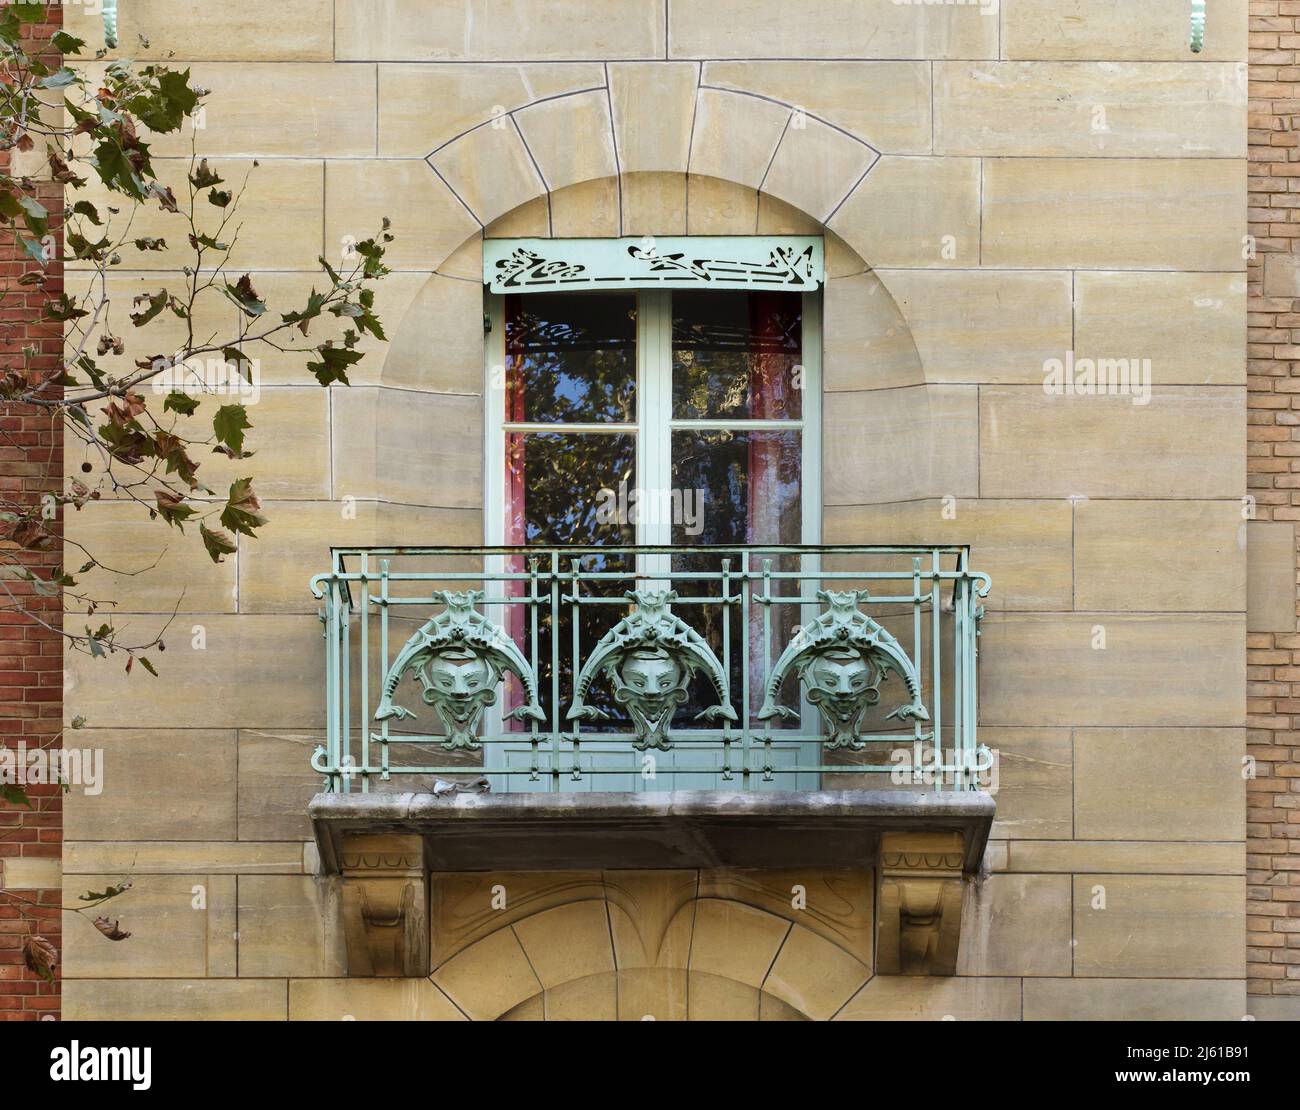 Una delle finestre del Castel Béranger a Parigi, Francia. L'edificio residenziale noto come Castel Béranger è stato progettato dall'architetto francese Hector Guimard e costruito tra il 1895 e il 1898 in Rue de la Fontaine. E' stato il primo edificio di Parigi nello stile noto come Art Nouveau. Foto Stock